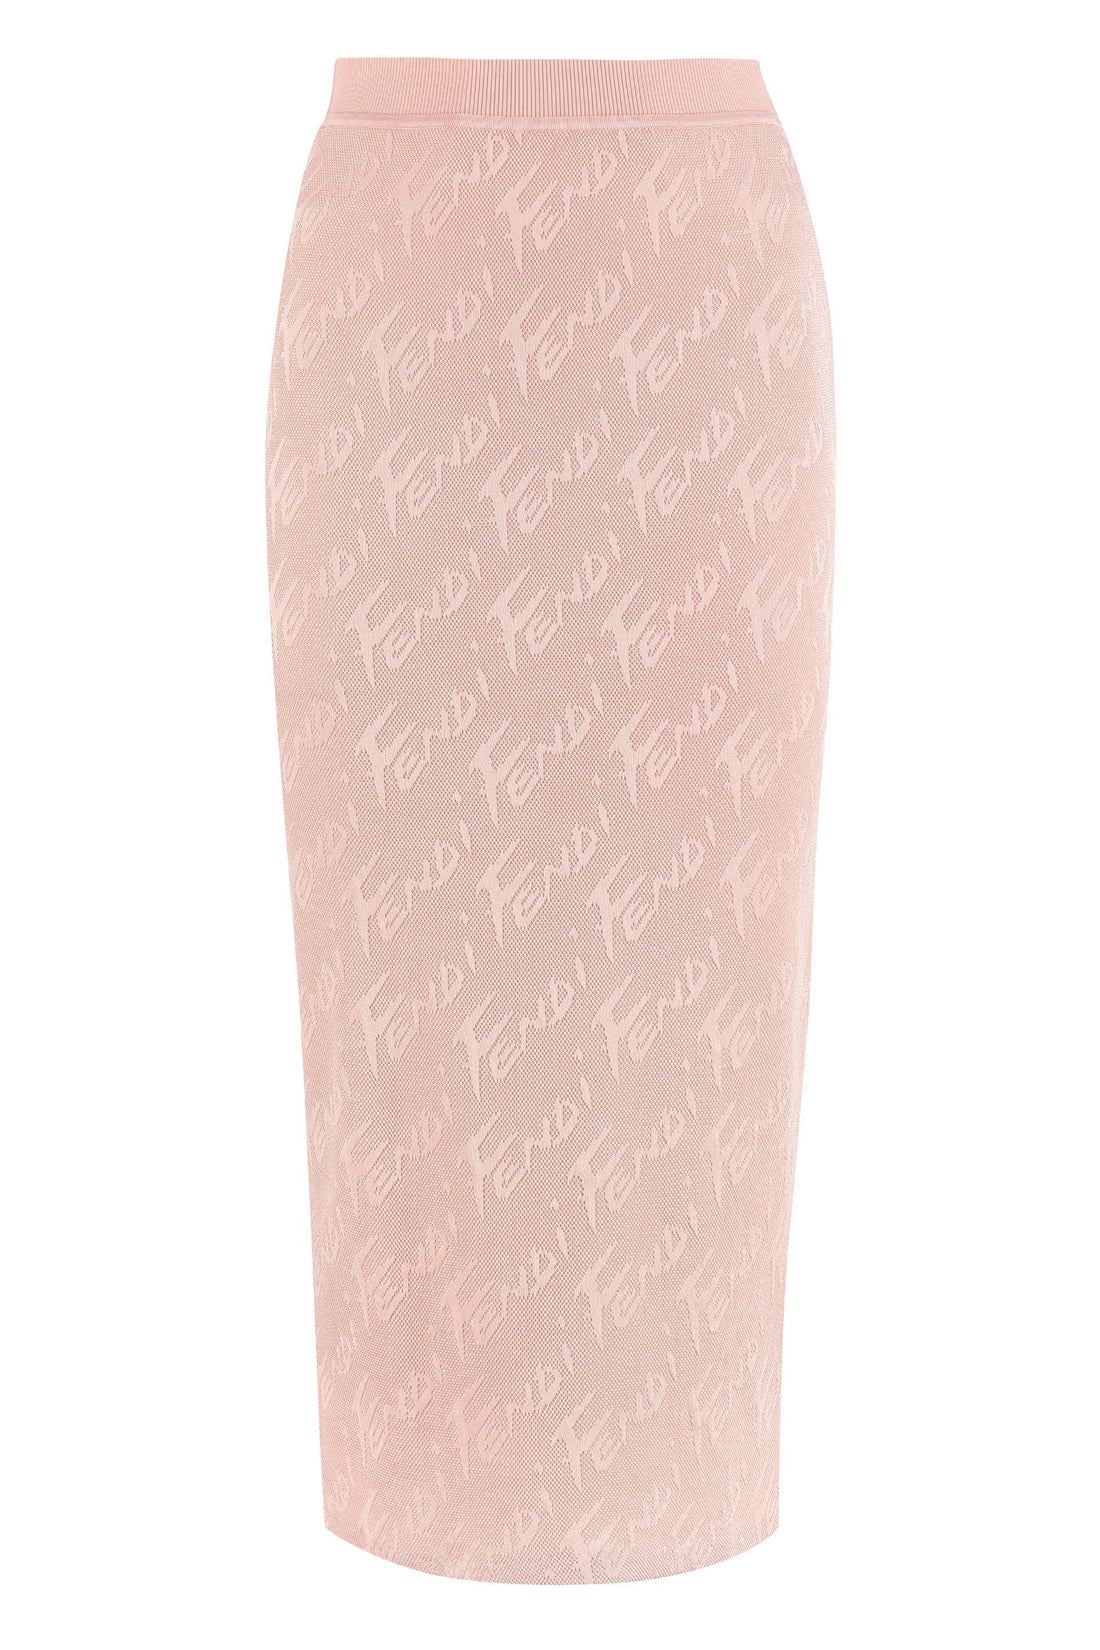 Fendi-OUTLET-SALE-Knit pencil skirt-ARCHIVIST